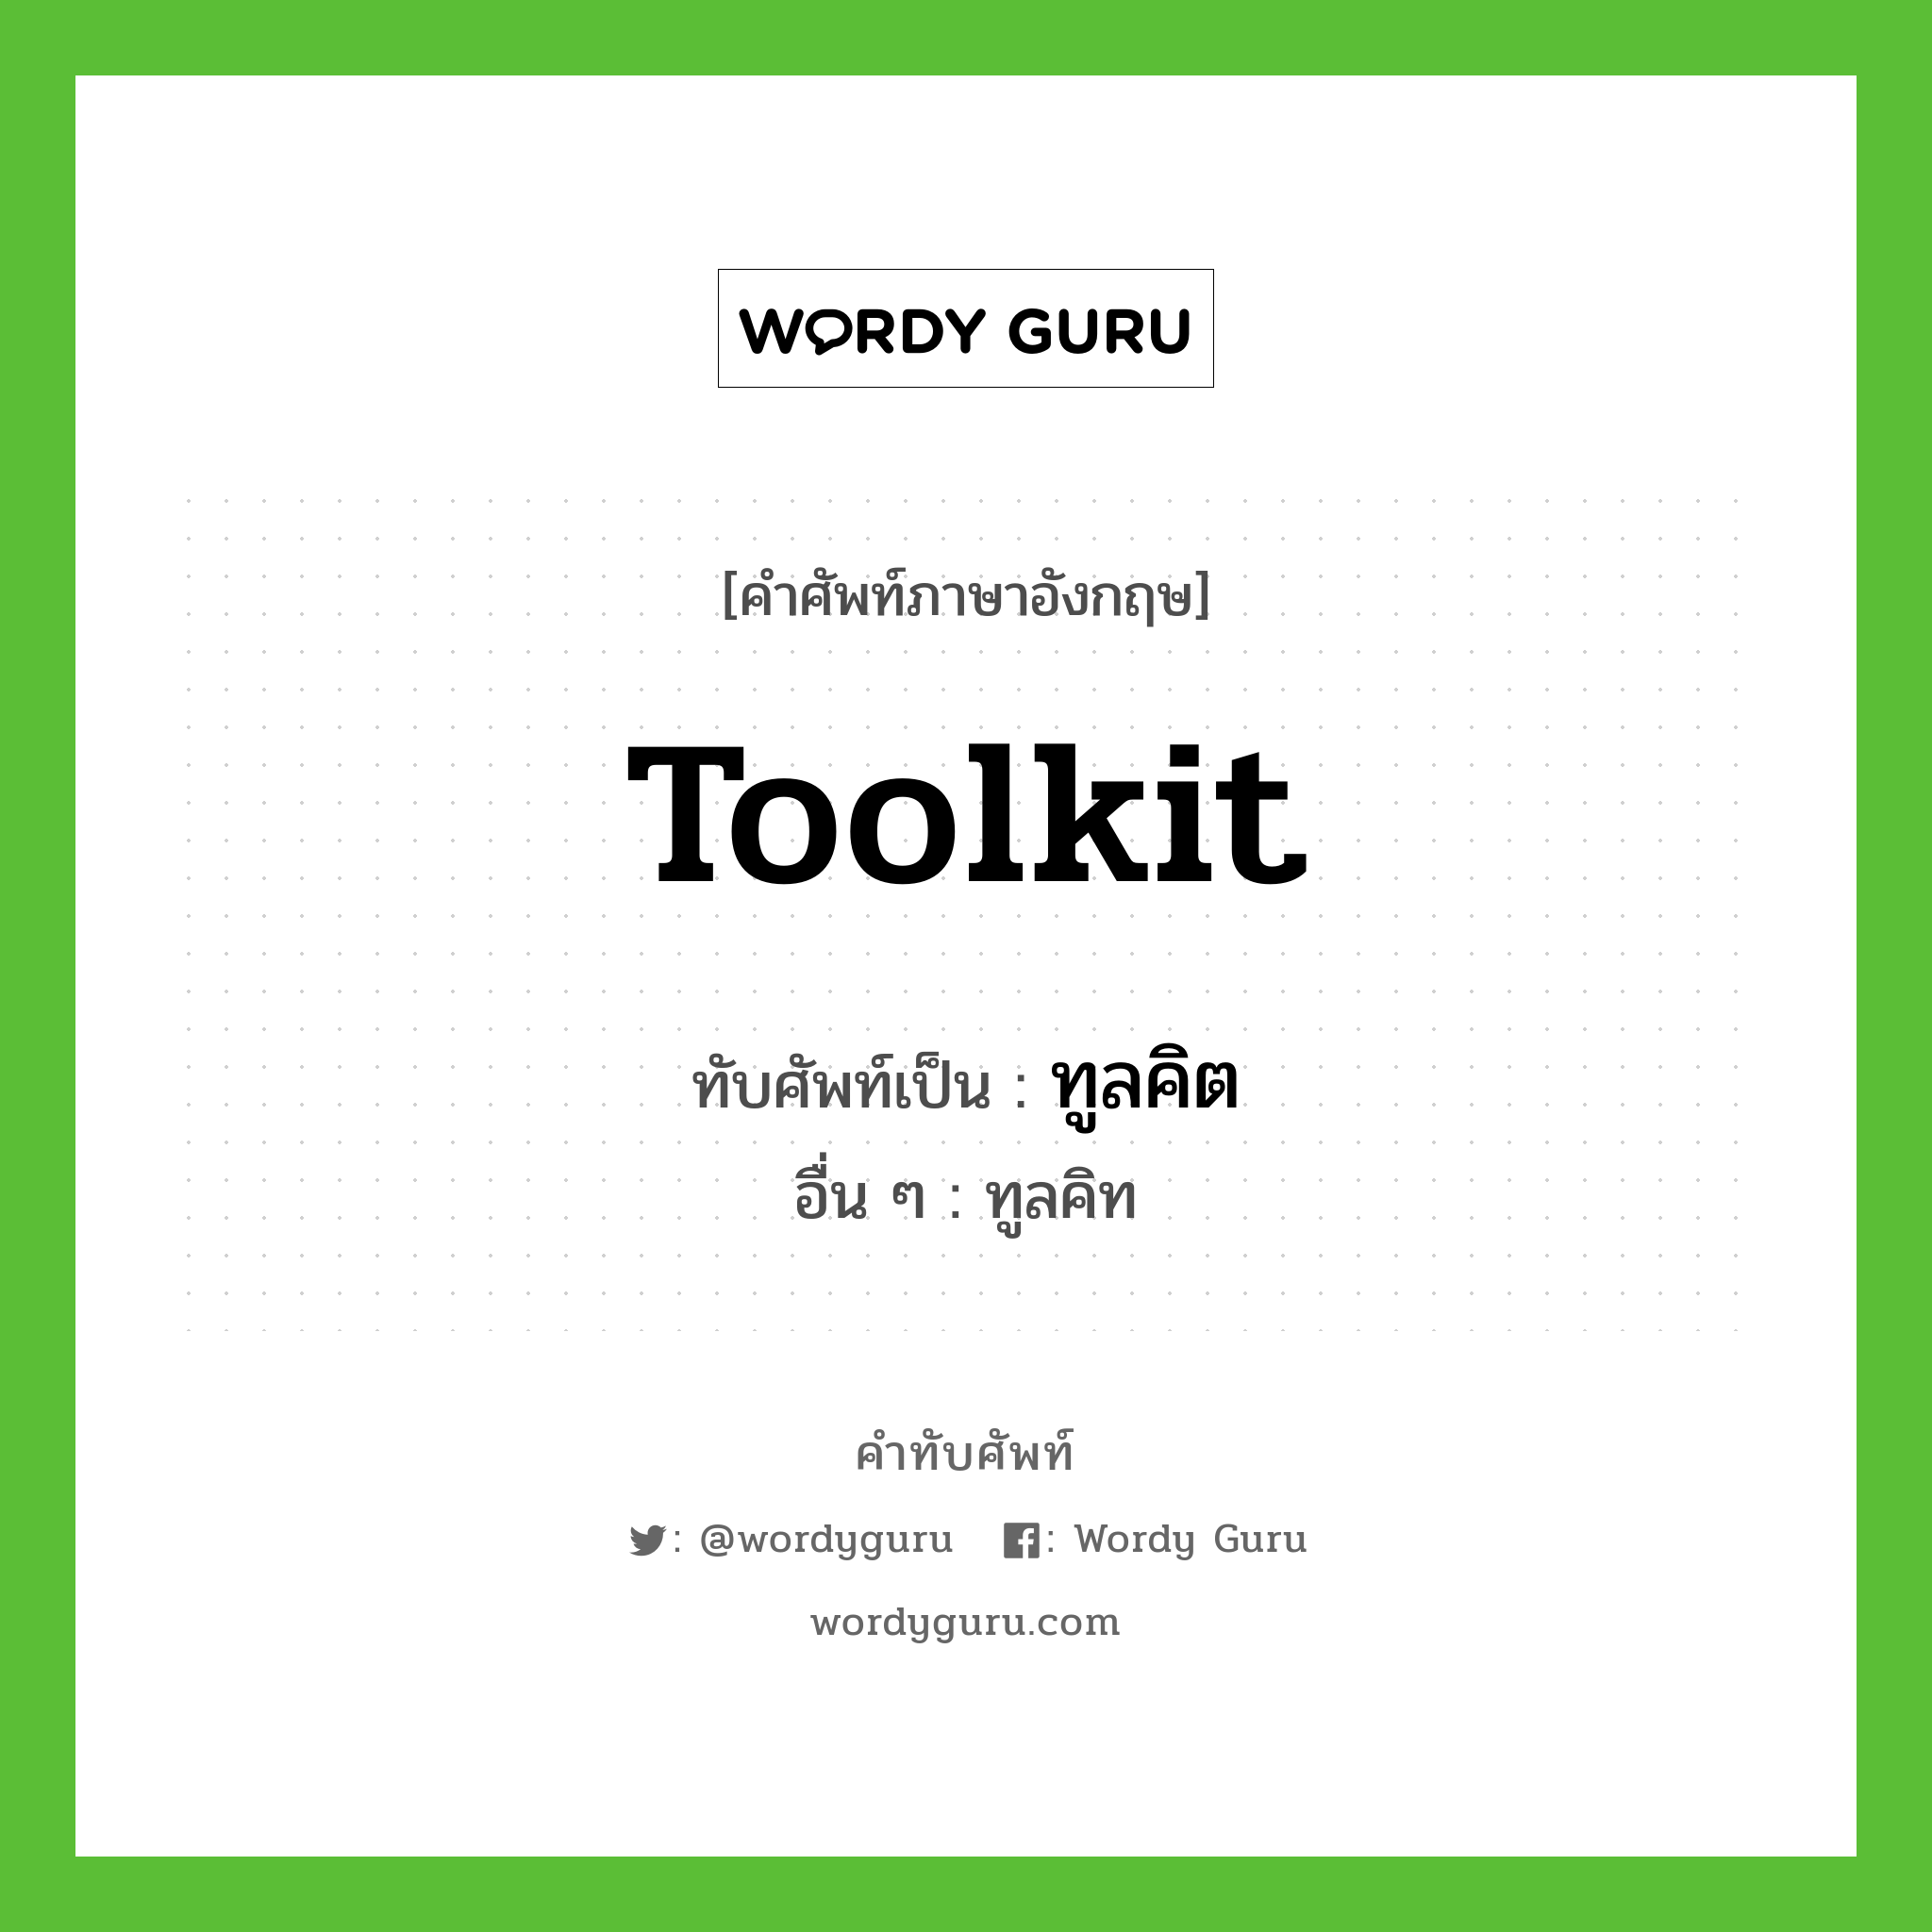 toolkit เขียนเป็นคำไทยว่าอะไร?, คำศัพท์ภาษาอังกฤษ toolkit ทับศัพท์เป็น ทูลคิต อื่น ๆ ทูลคิท